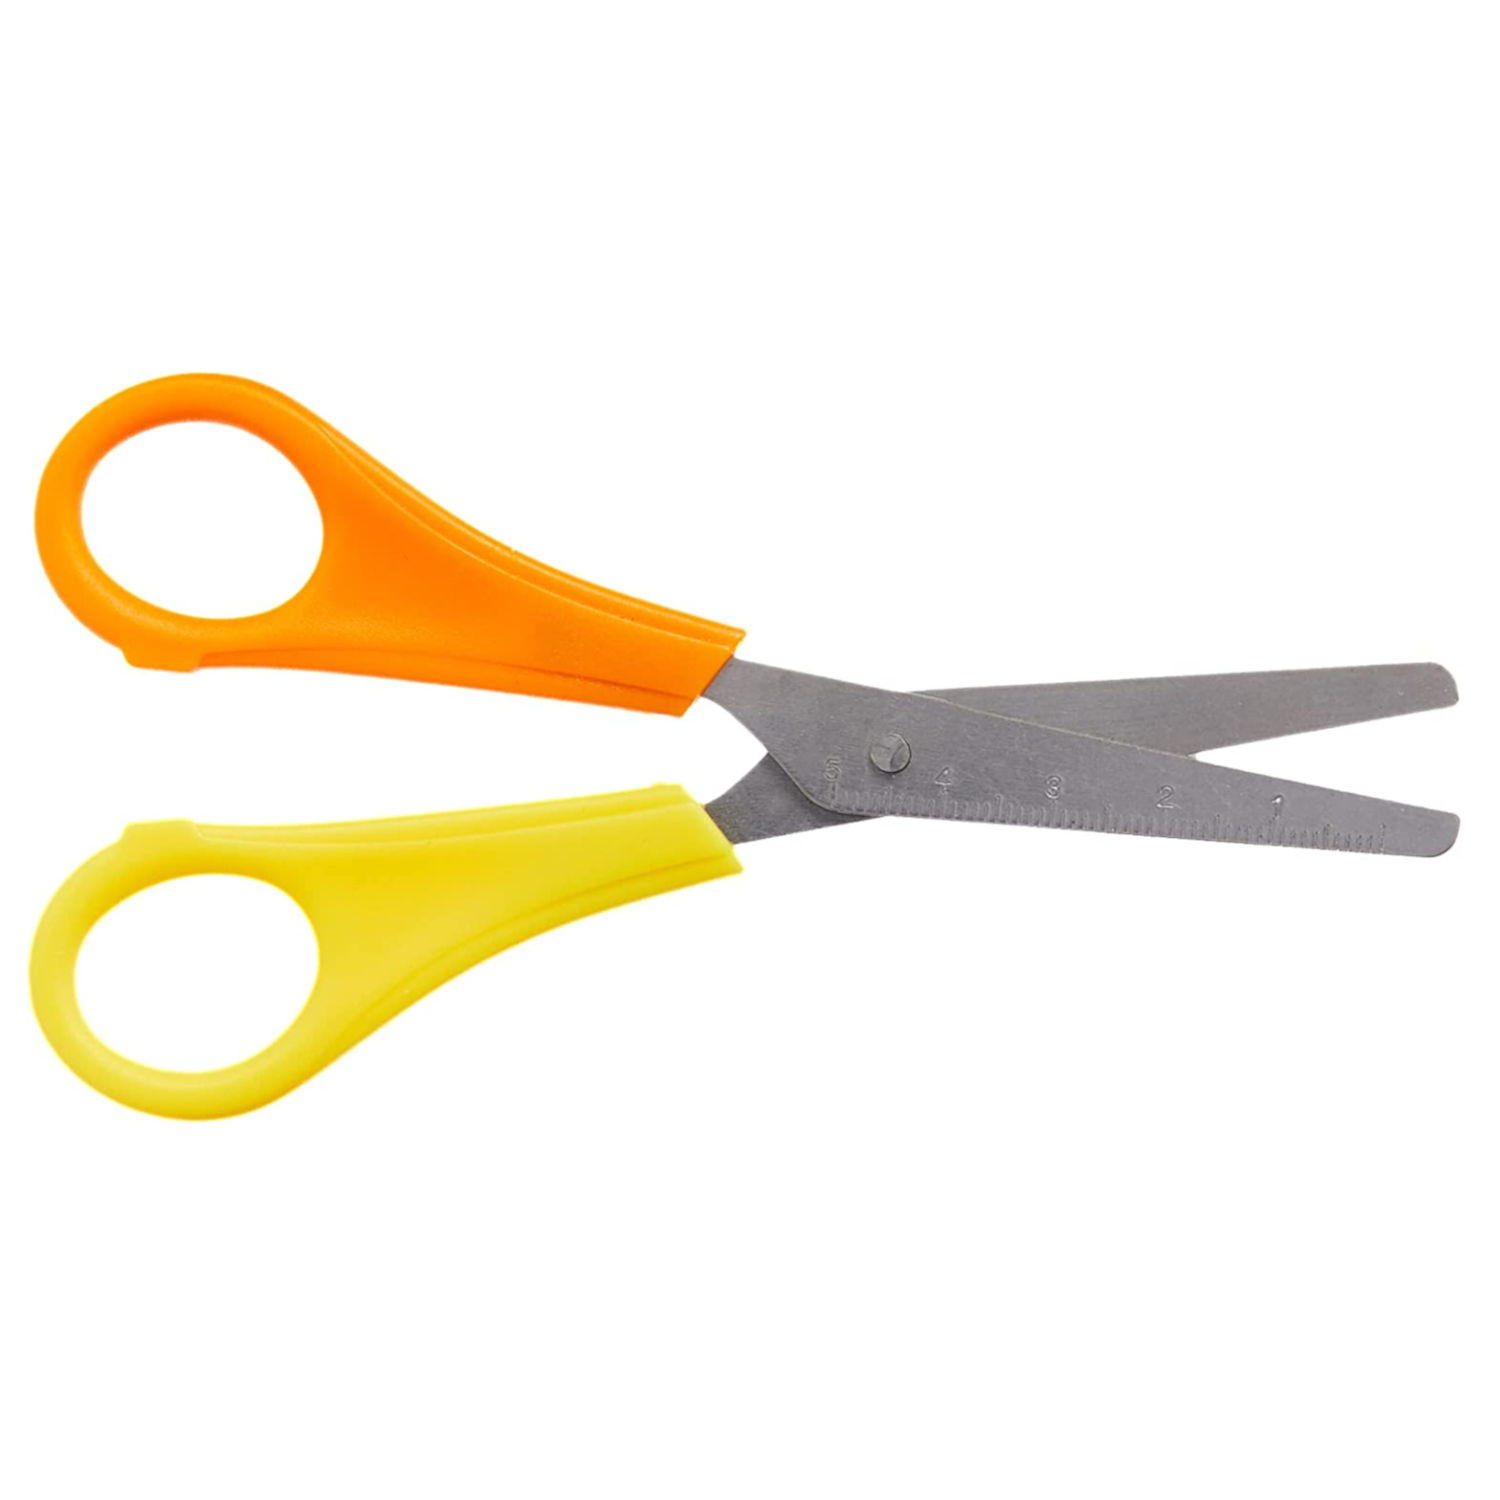 NEU Kinderschere für Linkshänder mit 5-cm-Maß, 13 cm, runde Spitze, Gelb-Orange